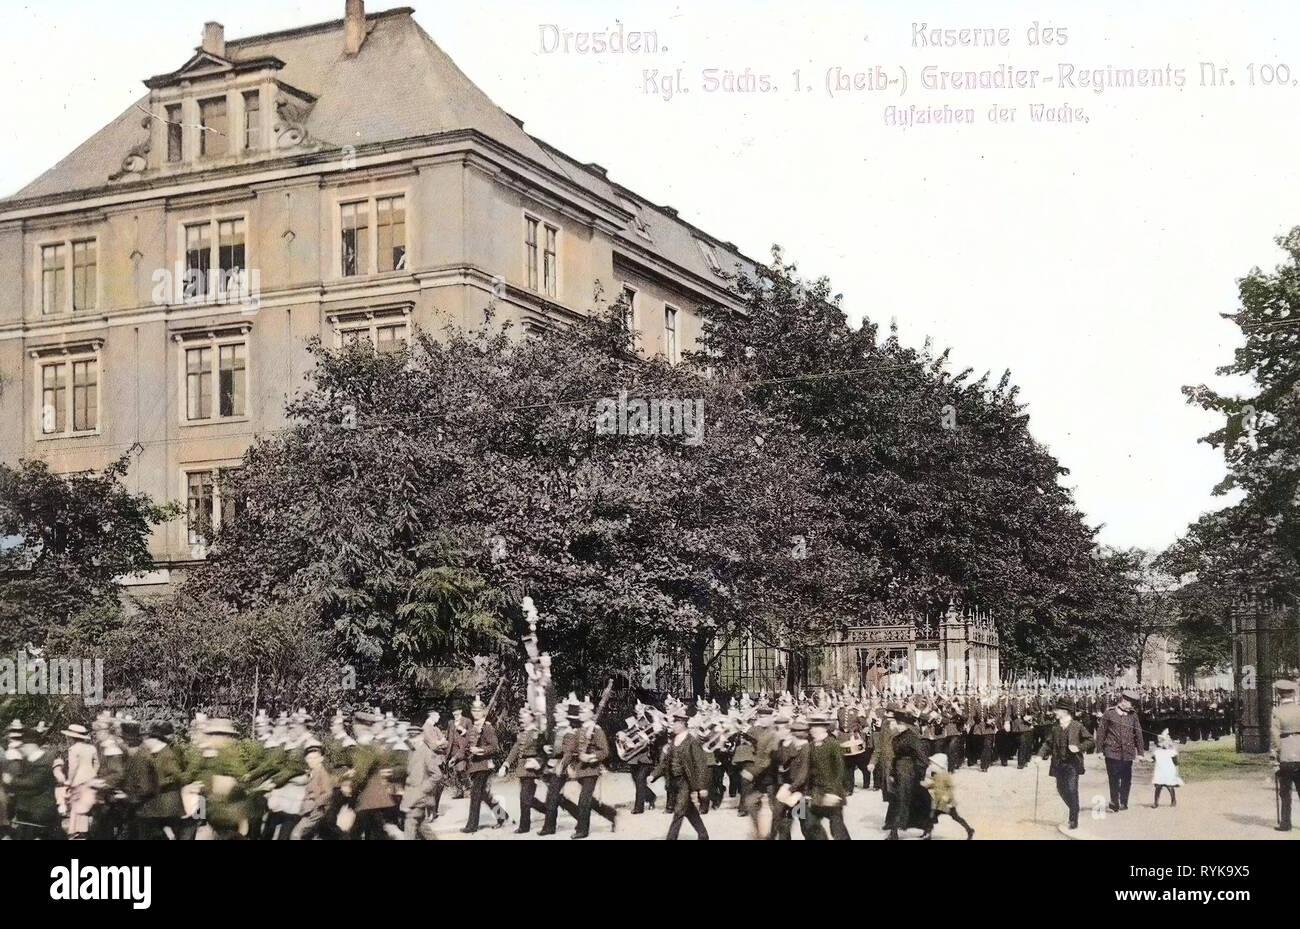 1. Königlich Saxon Leib-Grenadier-Regiment Nr. 100, Leib-Grenadier-Kasernen, 1912, Dresde, Kaserne des 1. Königlich Sächsischen, Grenadier Regiment Nr. 100, Allemagne Banque D'Images